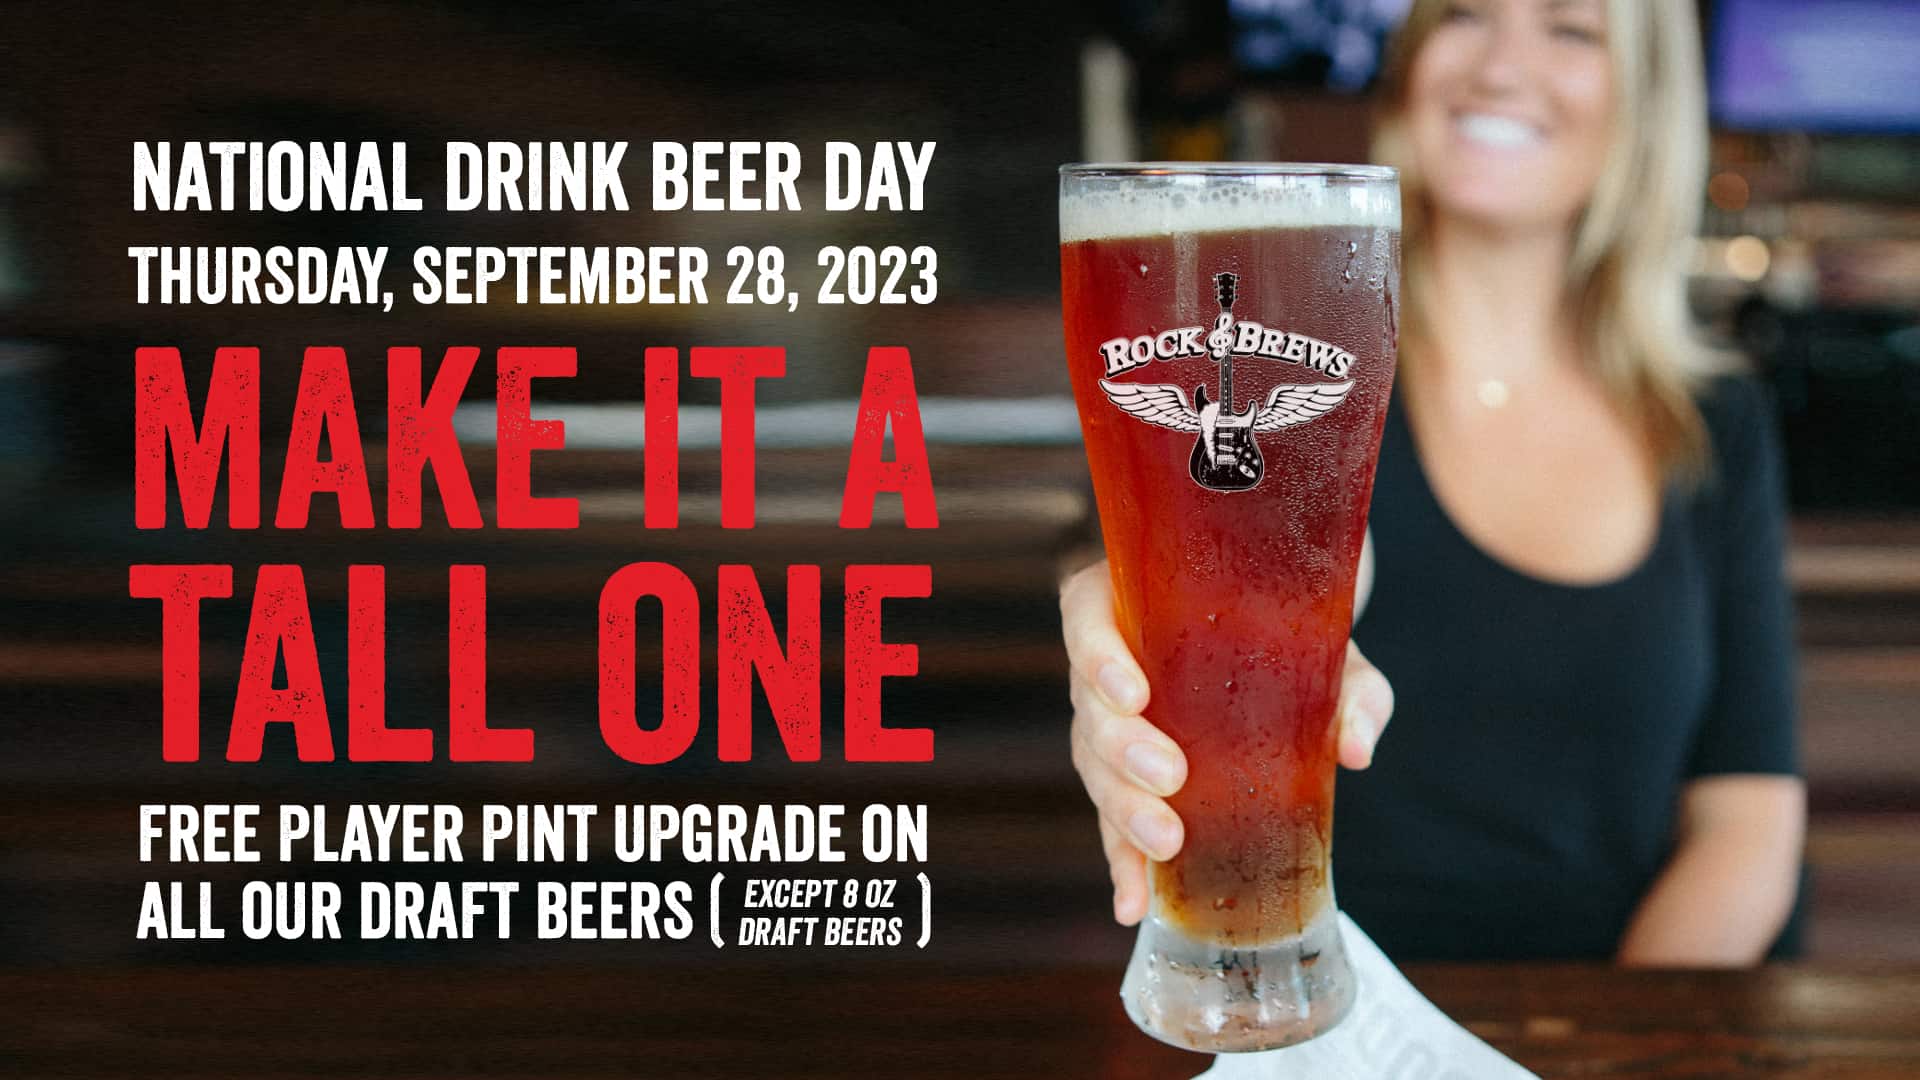 National Drink Beer Day: September 28, 2023